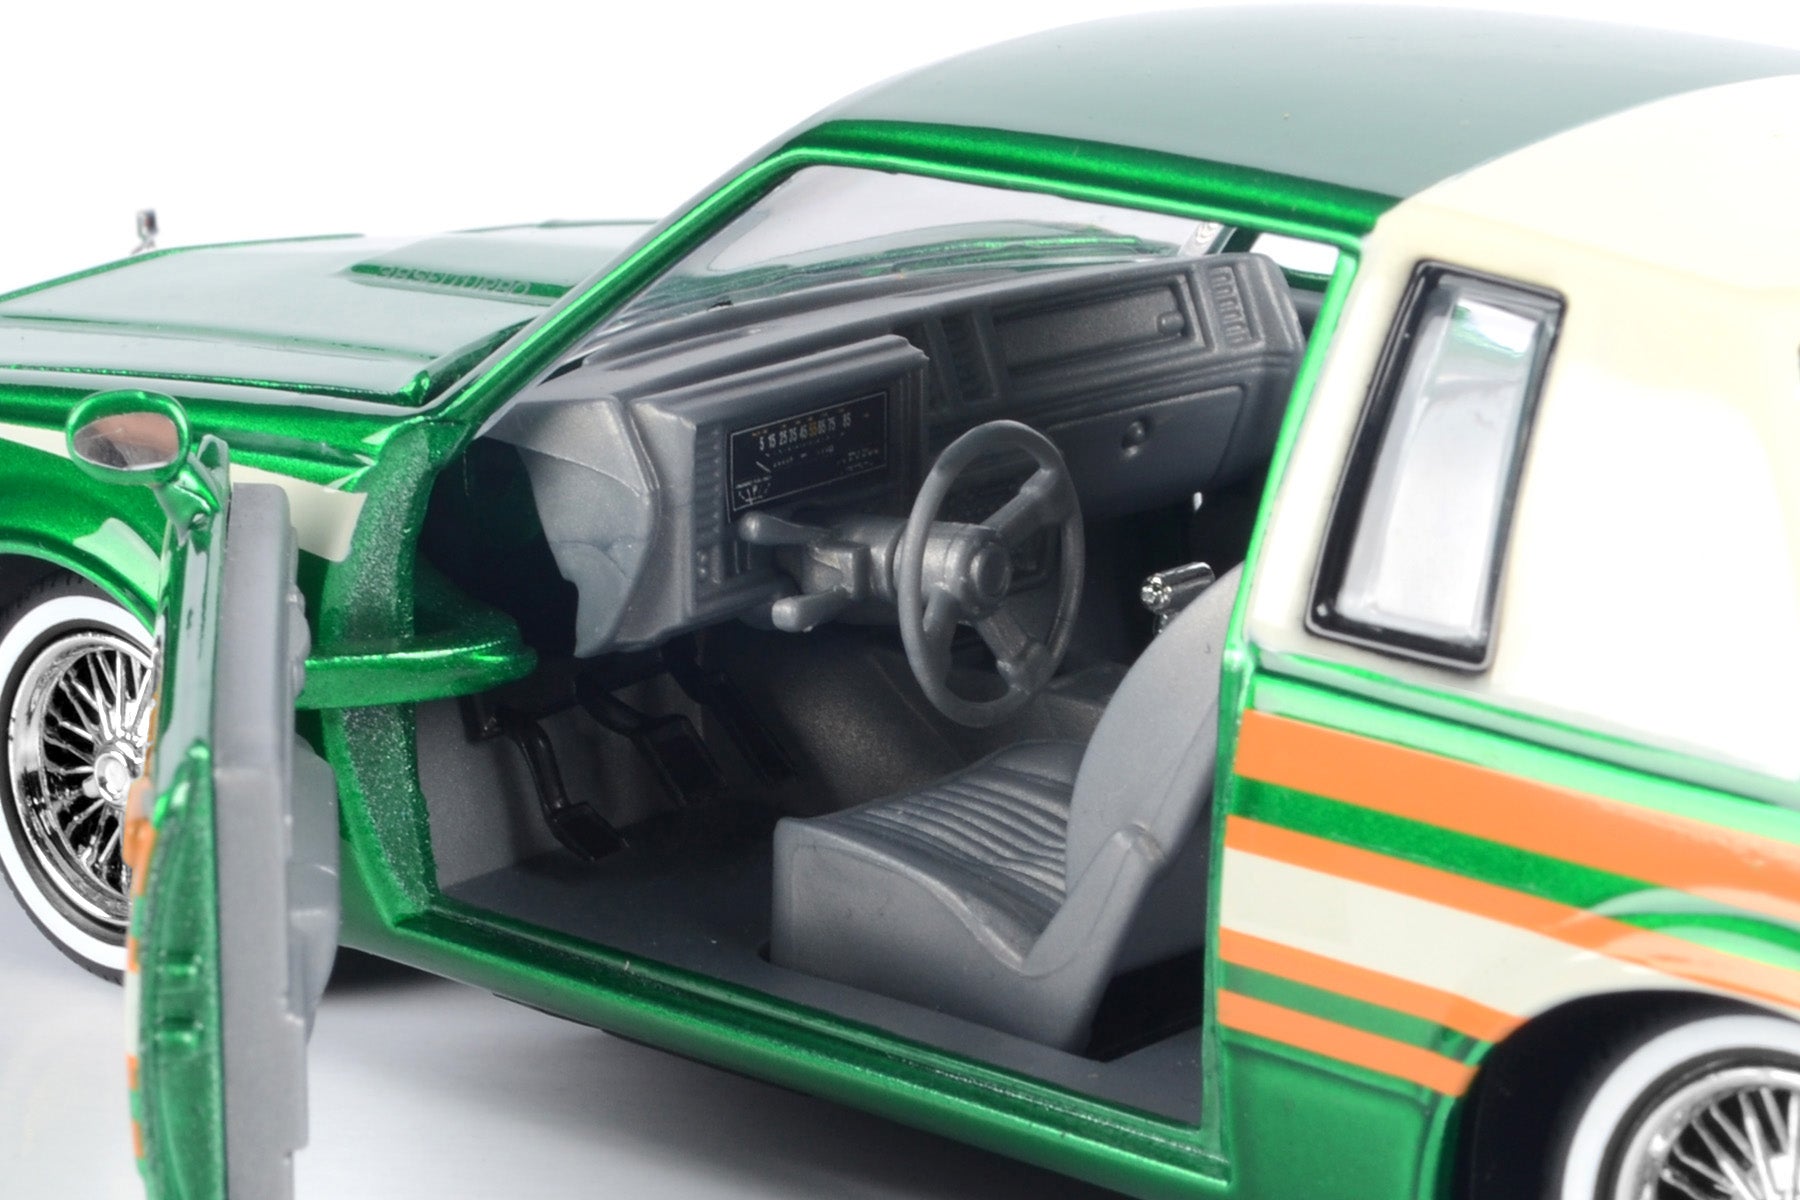 Motormax Get Low Series 1987 Buick Regal 3.8 SFI Turbo Green